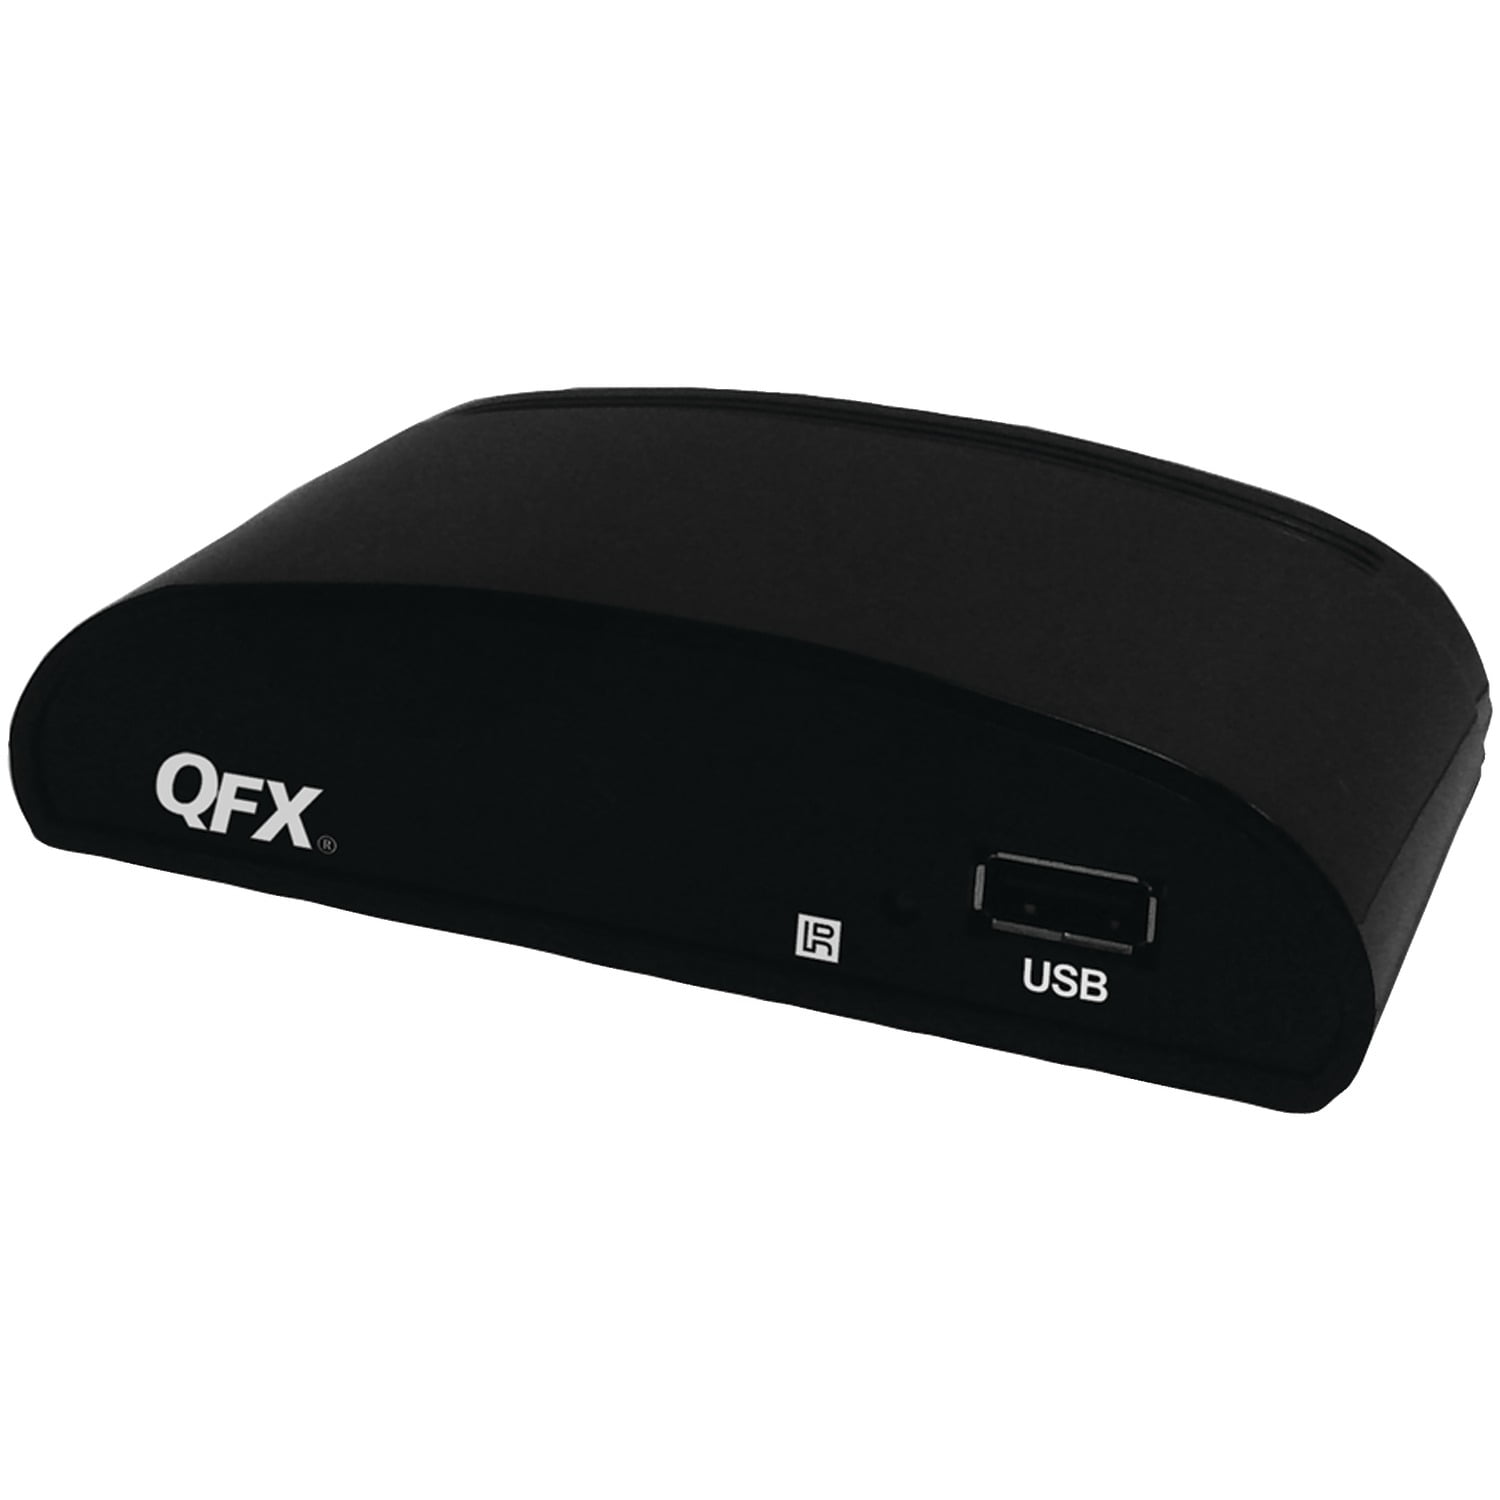 qfx cv-103 digital converter box